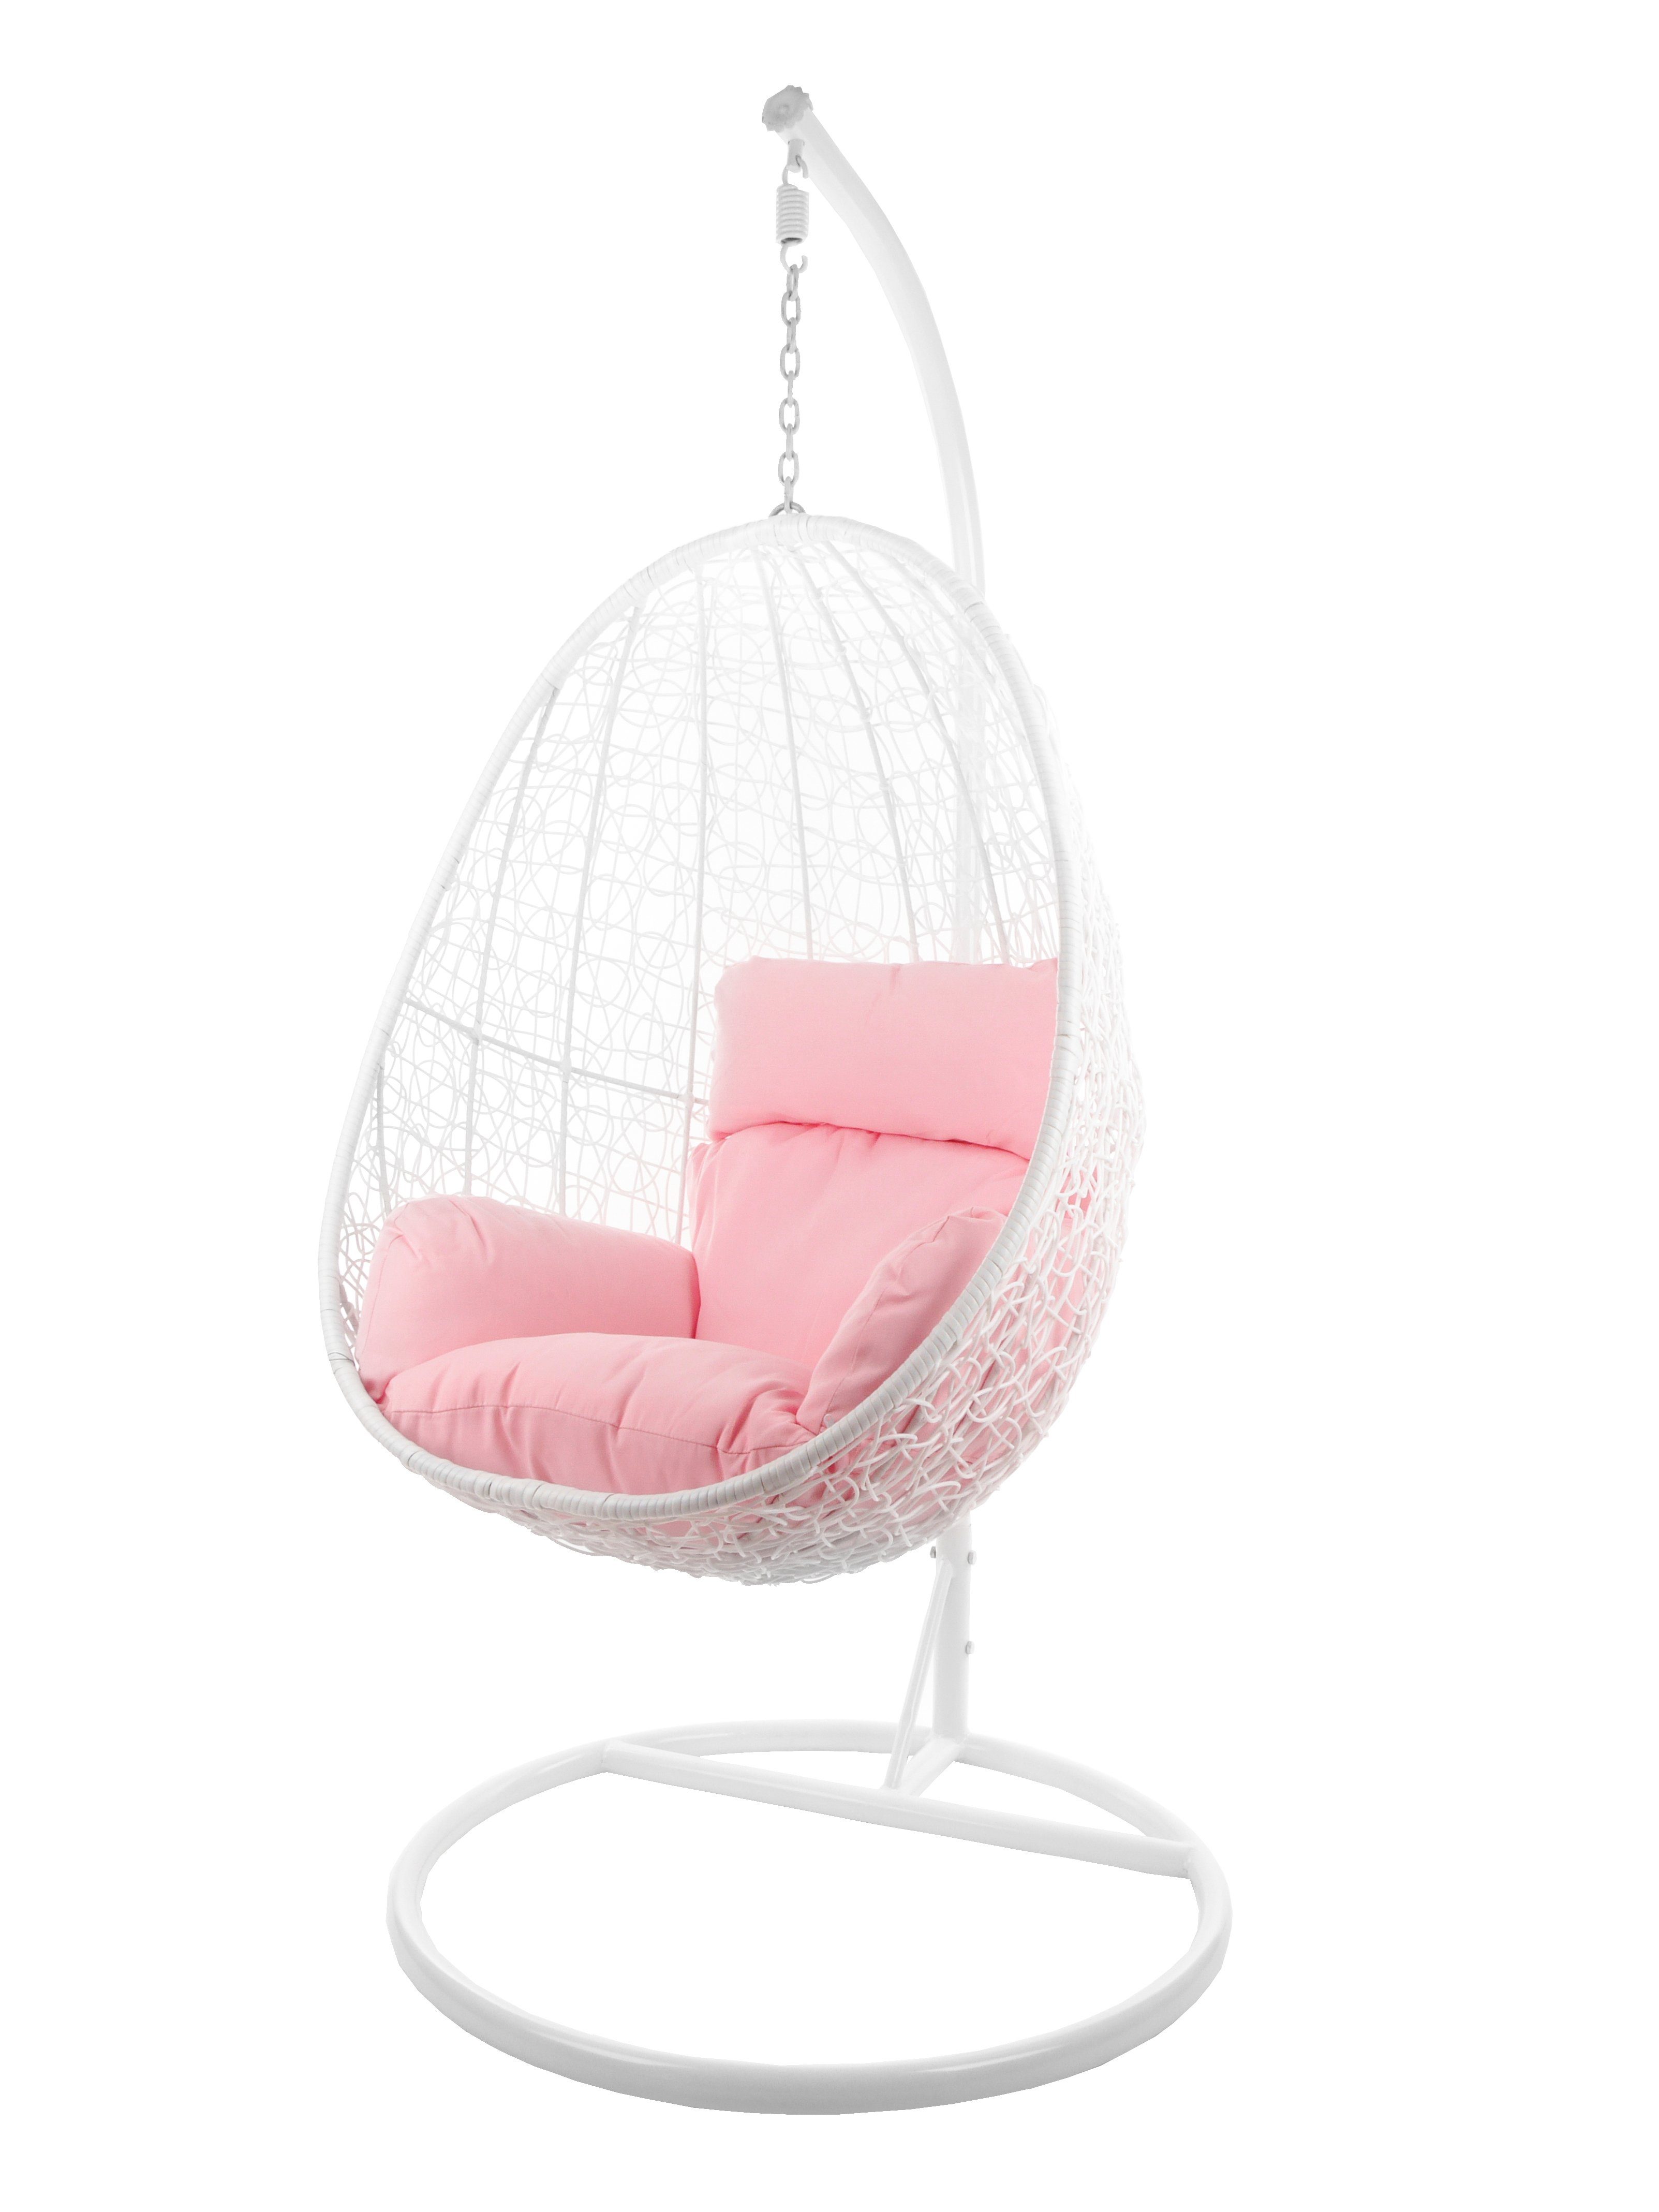 KIDEO Hängesessel Hängesessel CAPDEPERA weiß, Swing Chair mit Gestell und Kissen, Loungesessel, Hängesessel weiß rosa (3002 lemonade)